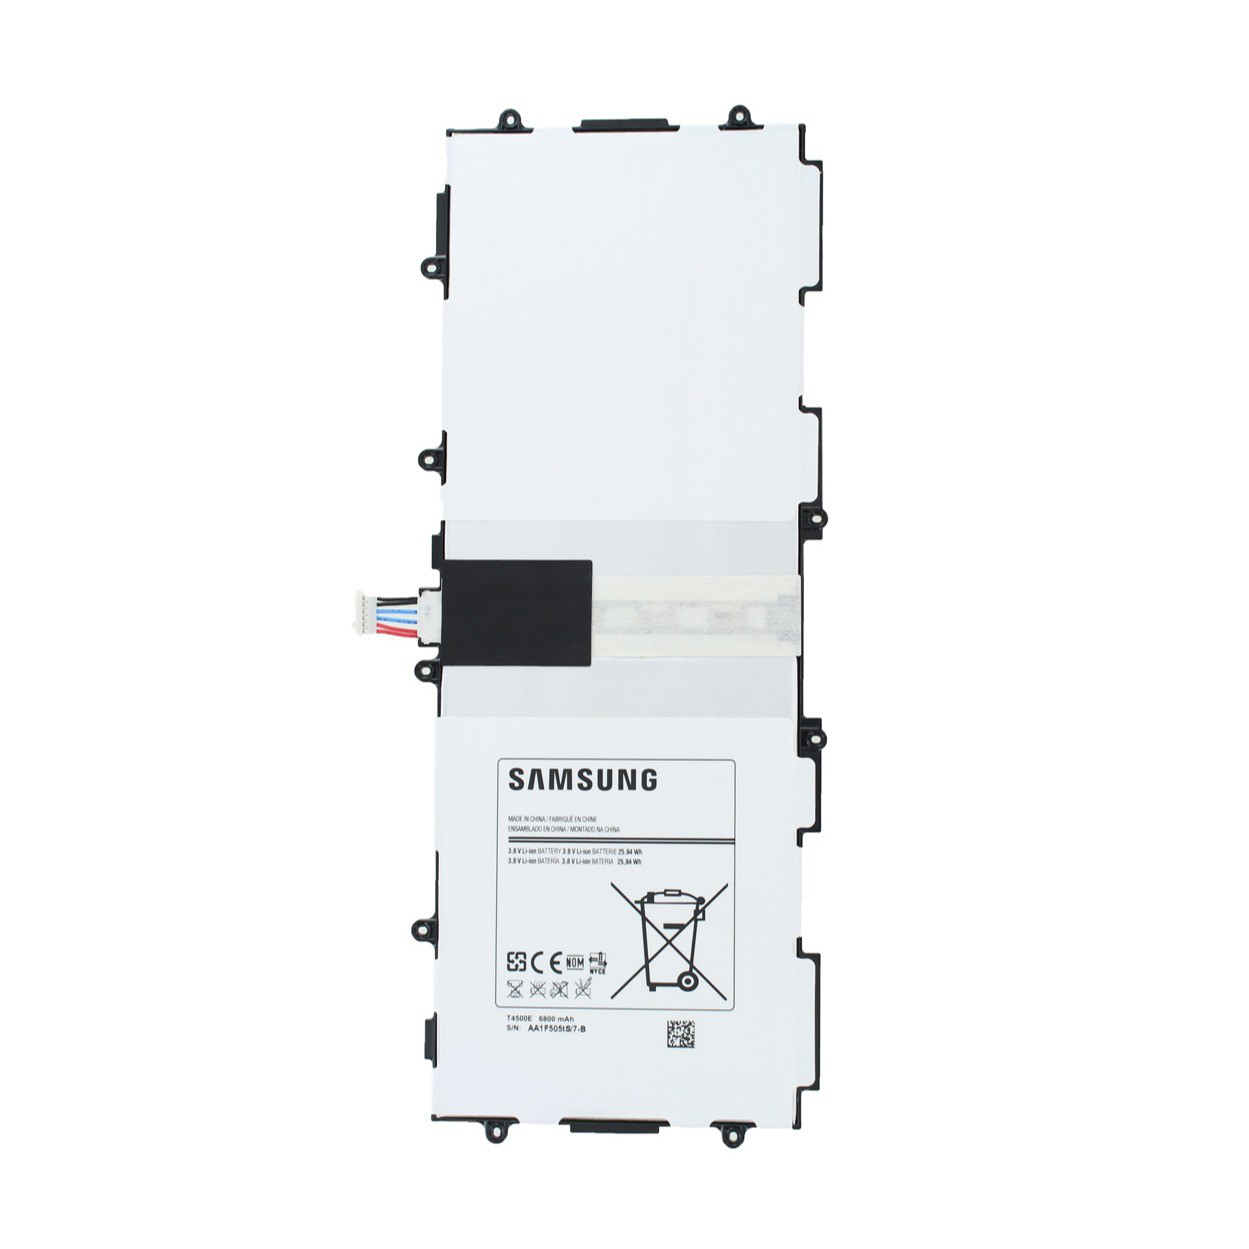 باتری تبلت مدل T4500E54 ظرفیت 6800 میلی آمپر ساعت مناسب برای تبلت سامسونگ Galaxy Tab 3 10.1.